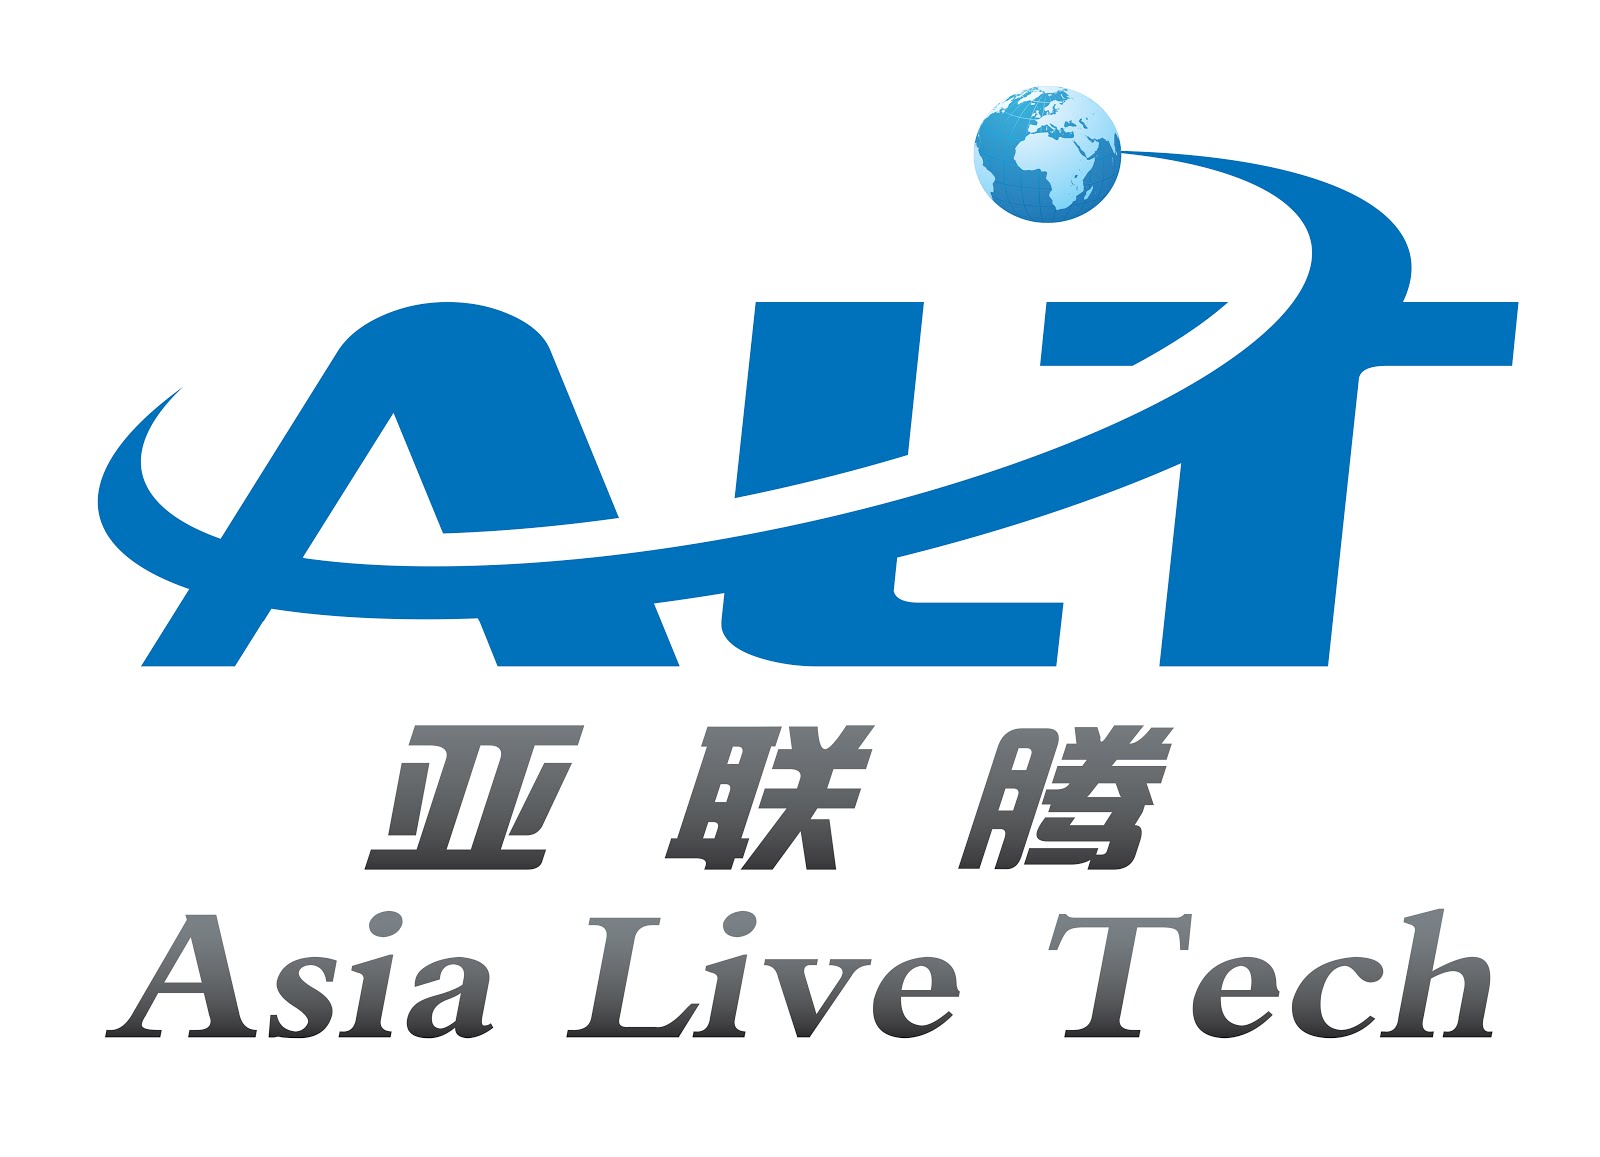 Asia Live Tech 